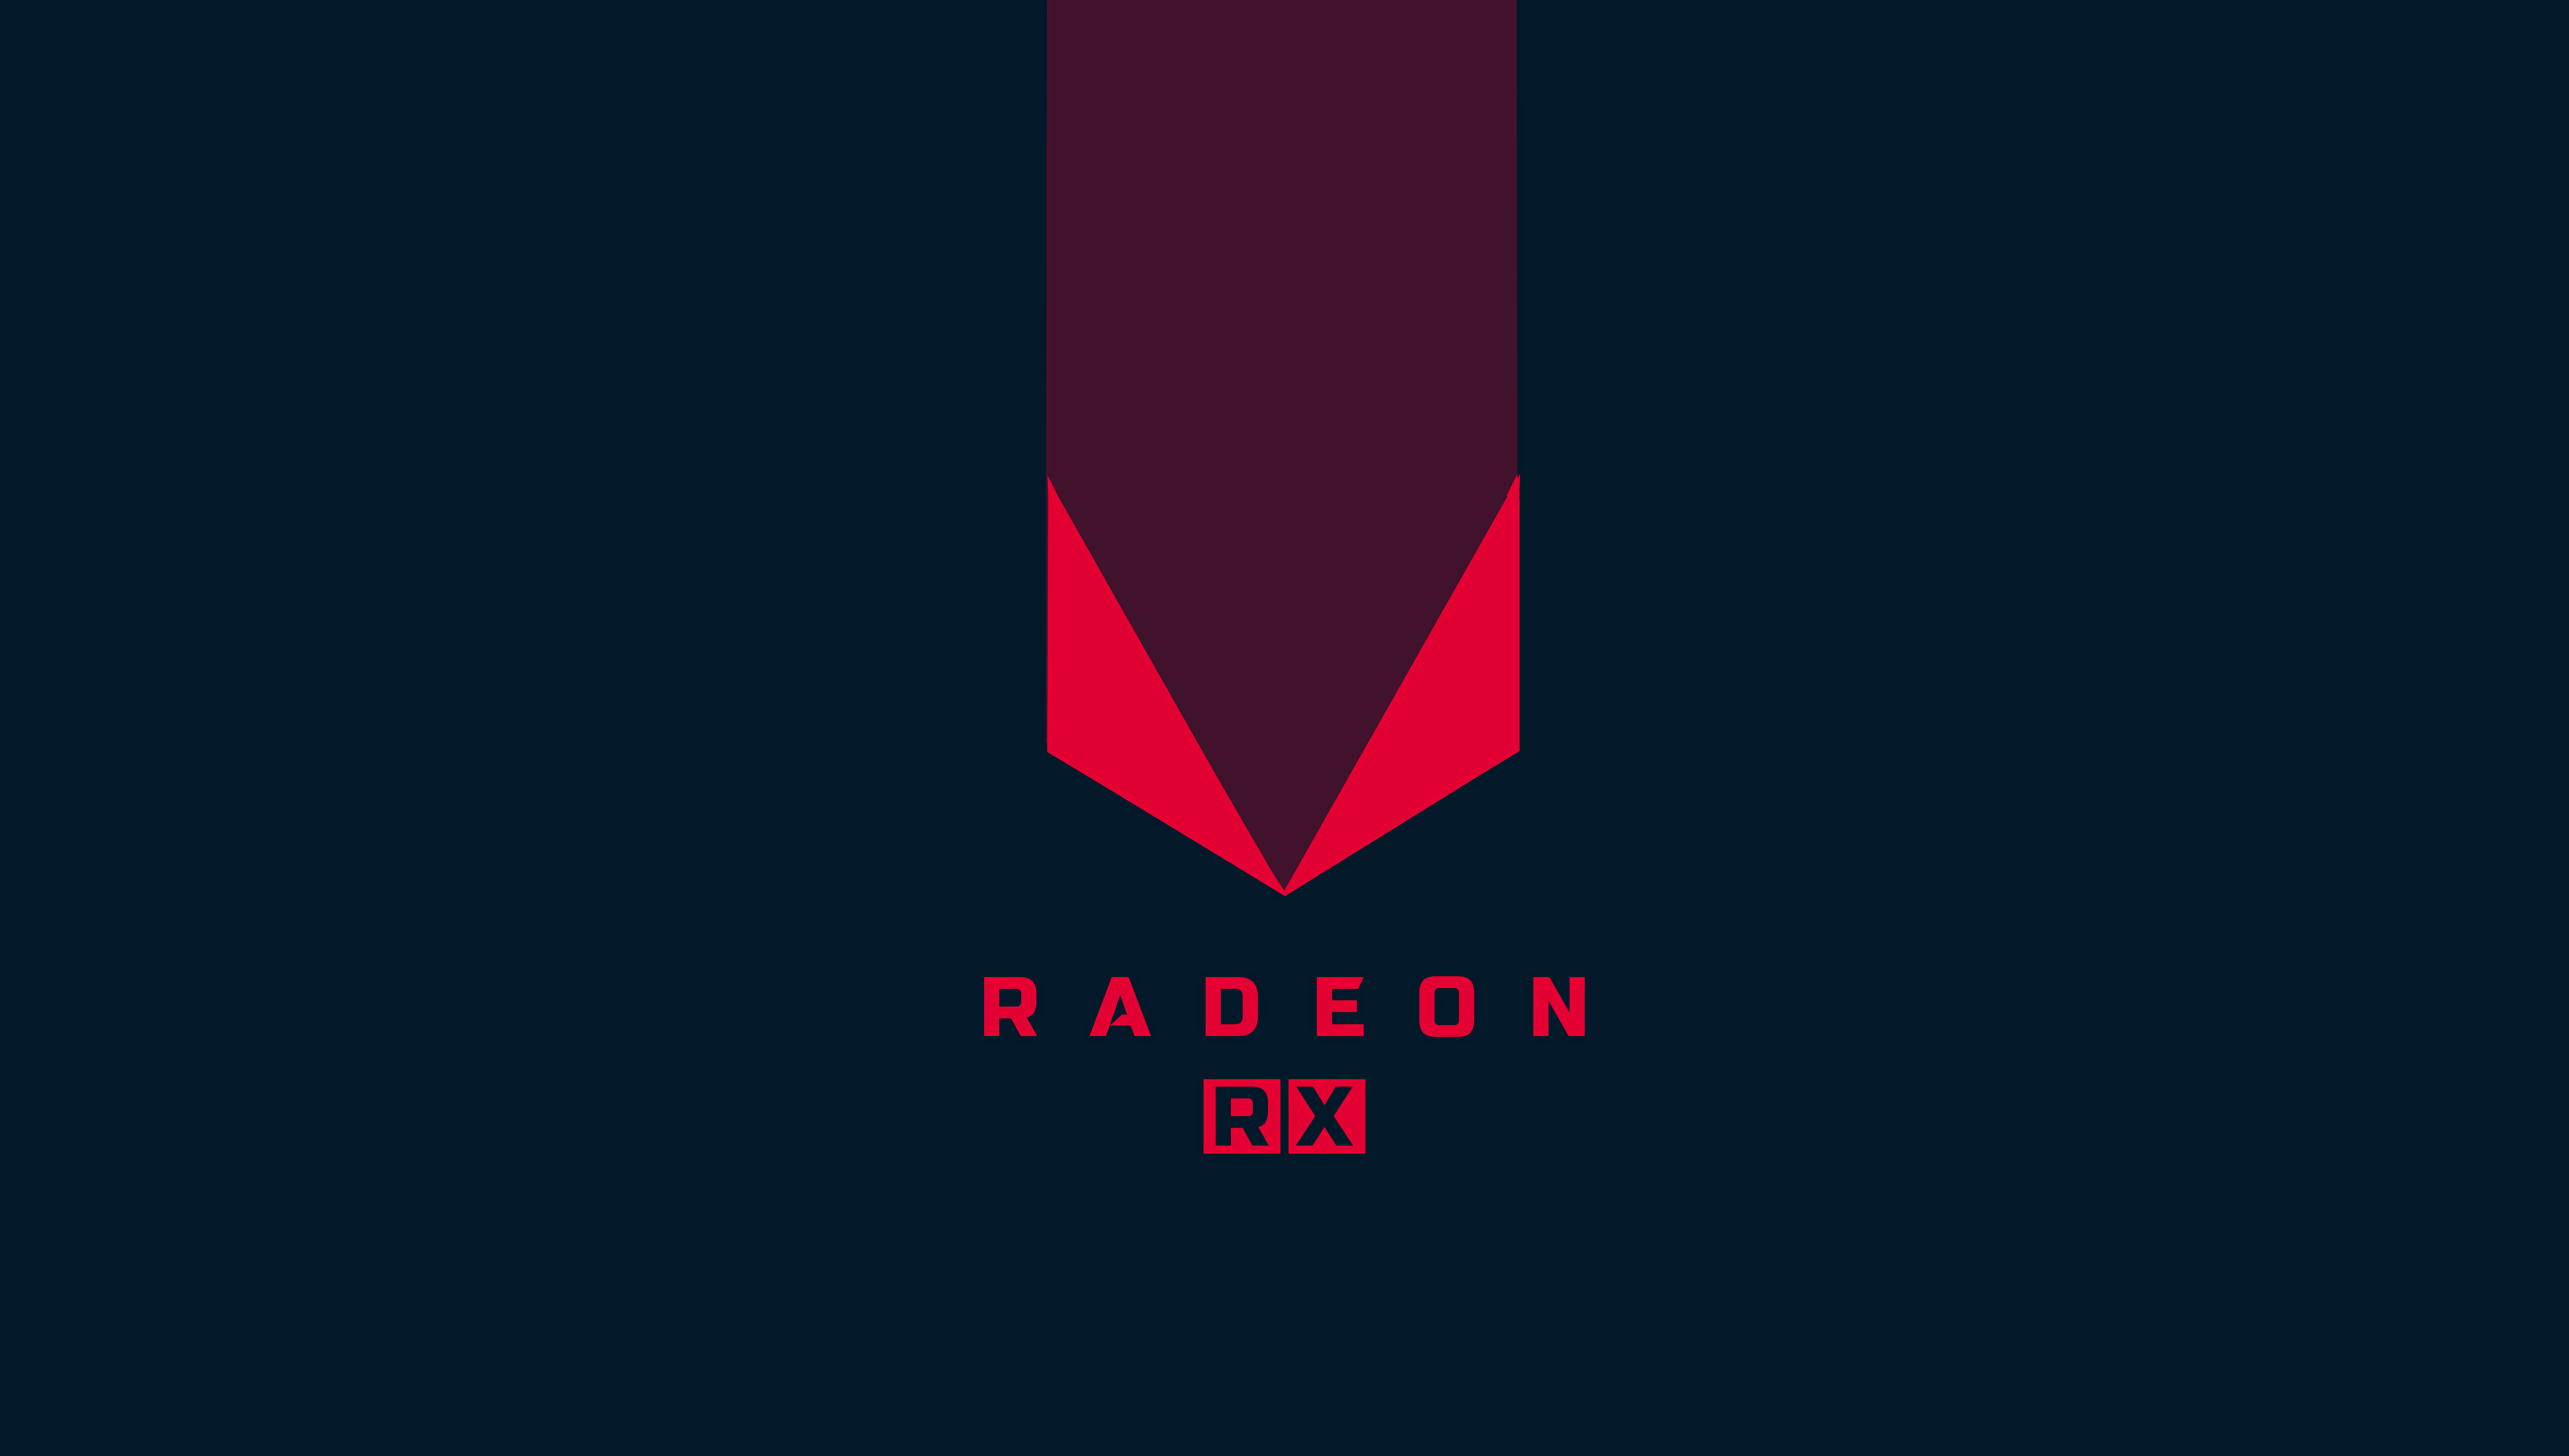 Radeon Rx 5k Retina Ultra Hd Wallpaper Background Image 76x43 Id Wallpaper Abyss